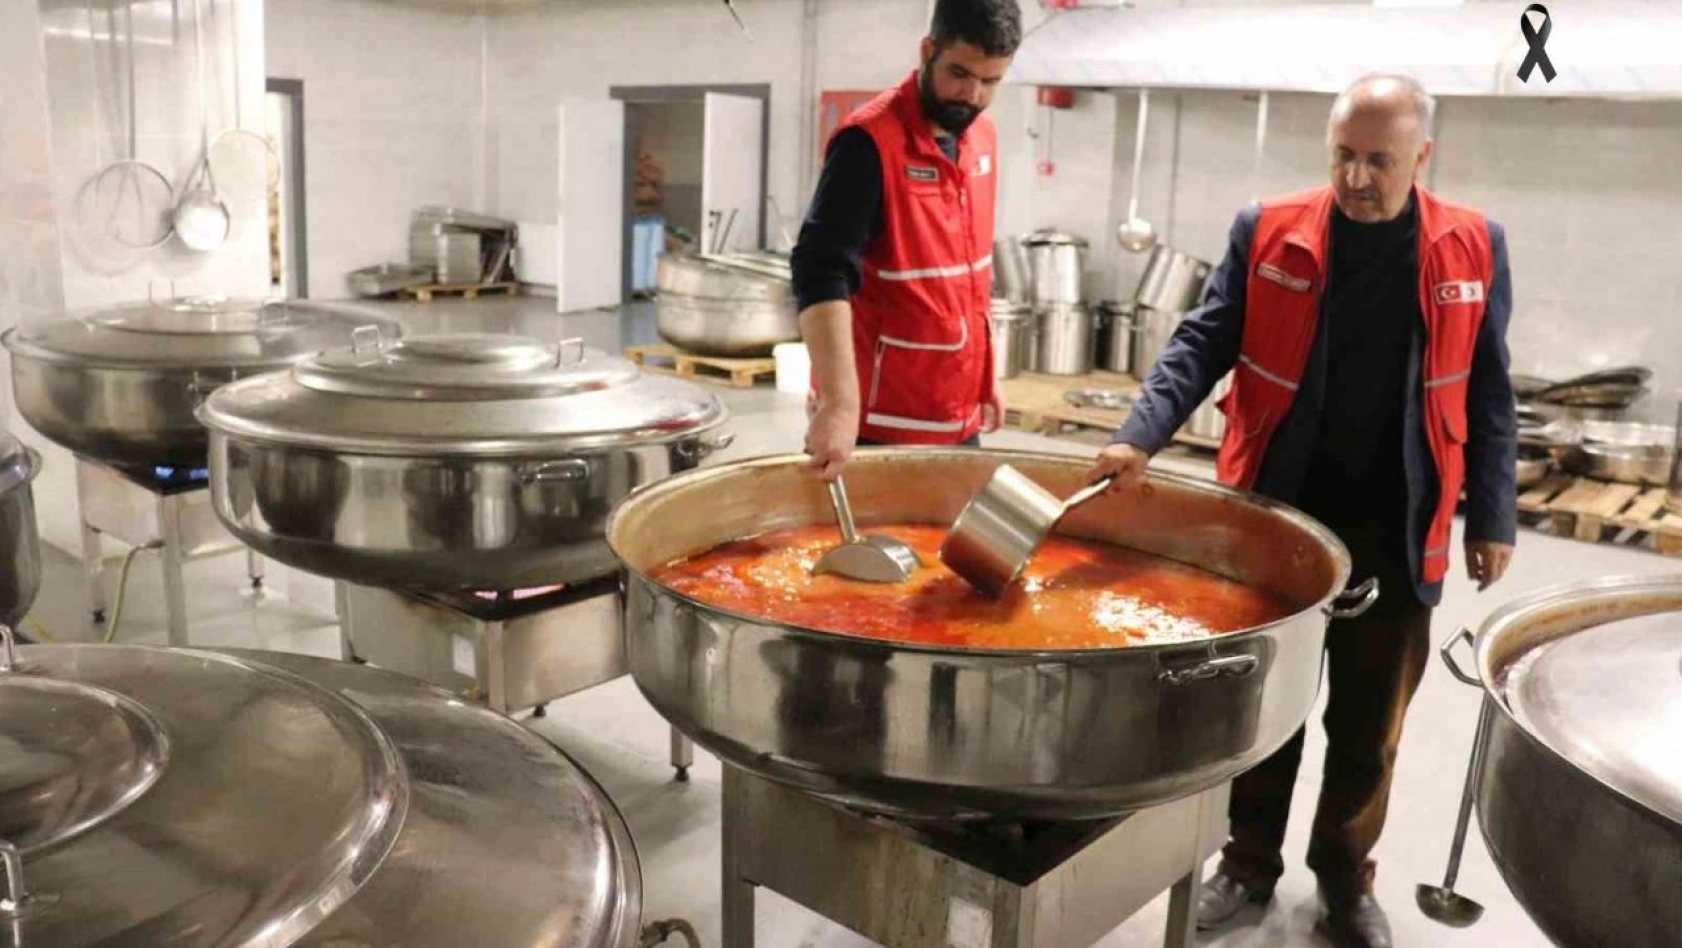 Kızılay Malatya'da günlük 340 bin yemek dağıtımı yapıyor